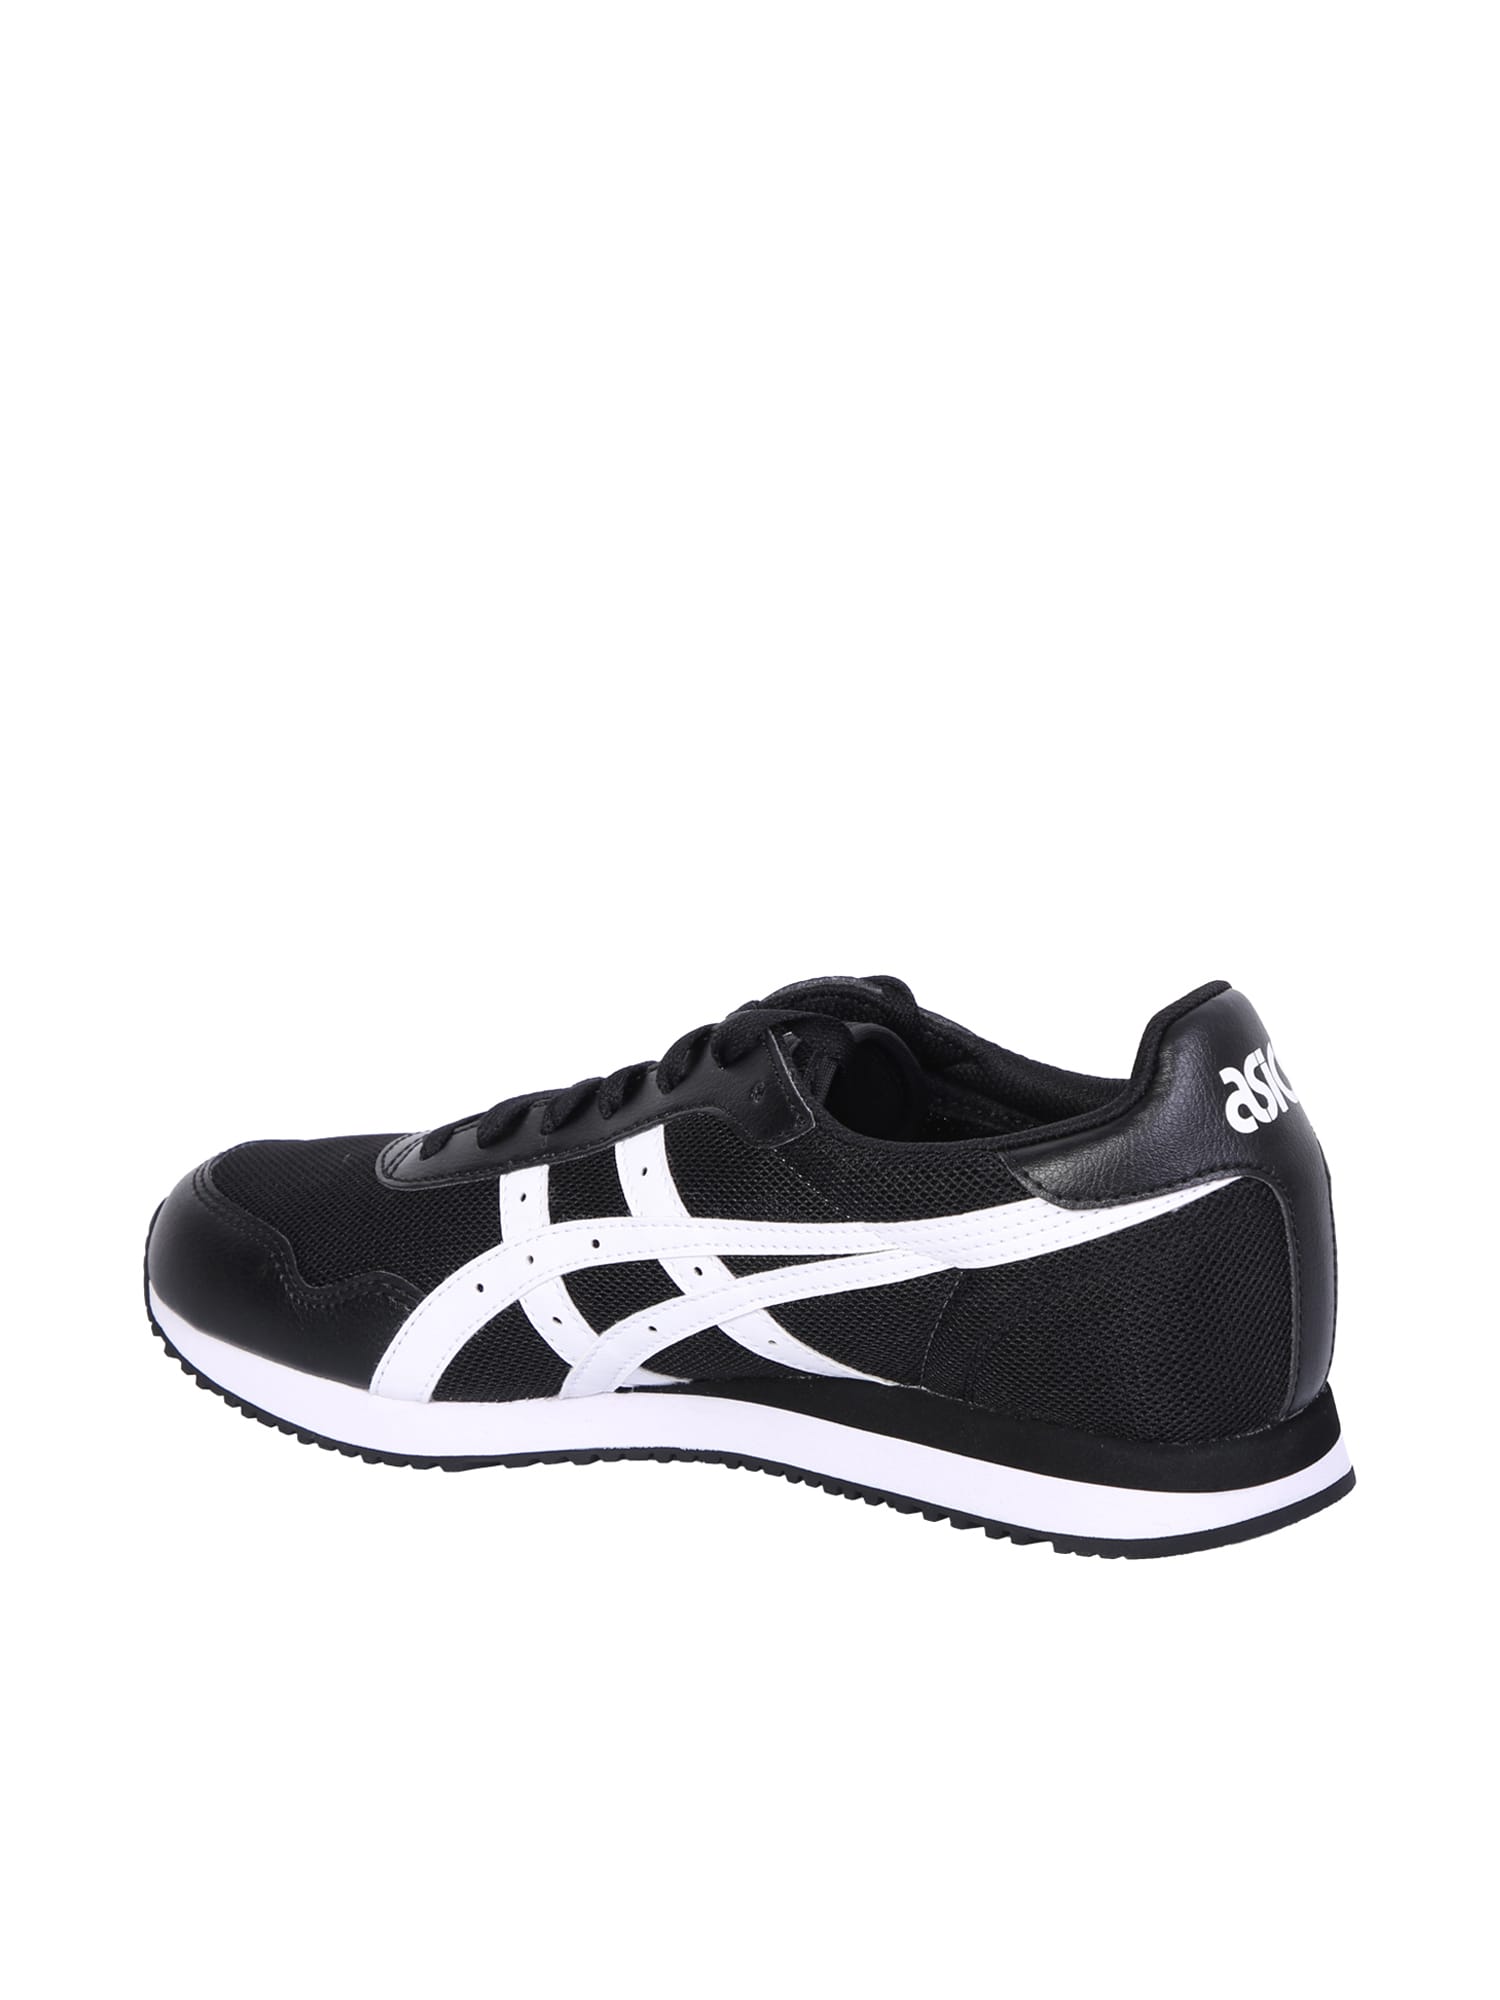 Shop Asics Black/ White Tiger Runner Sneakers